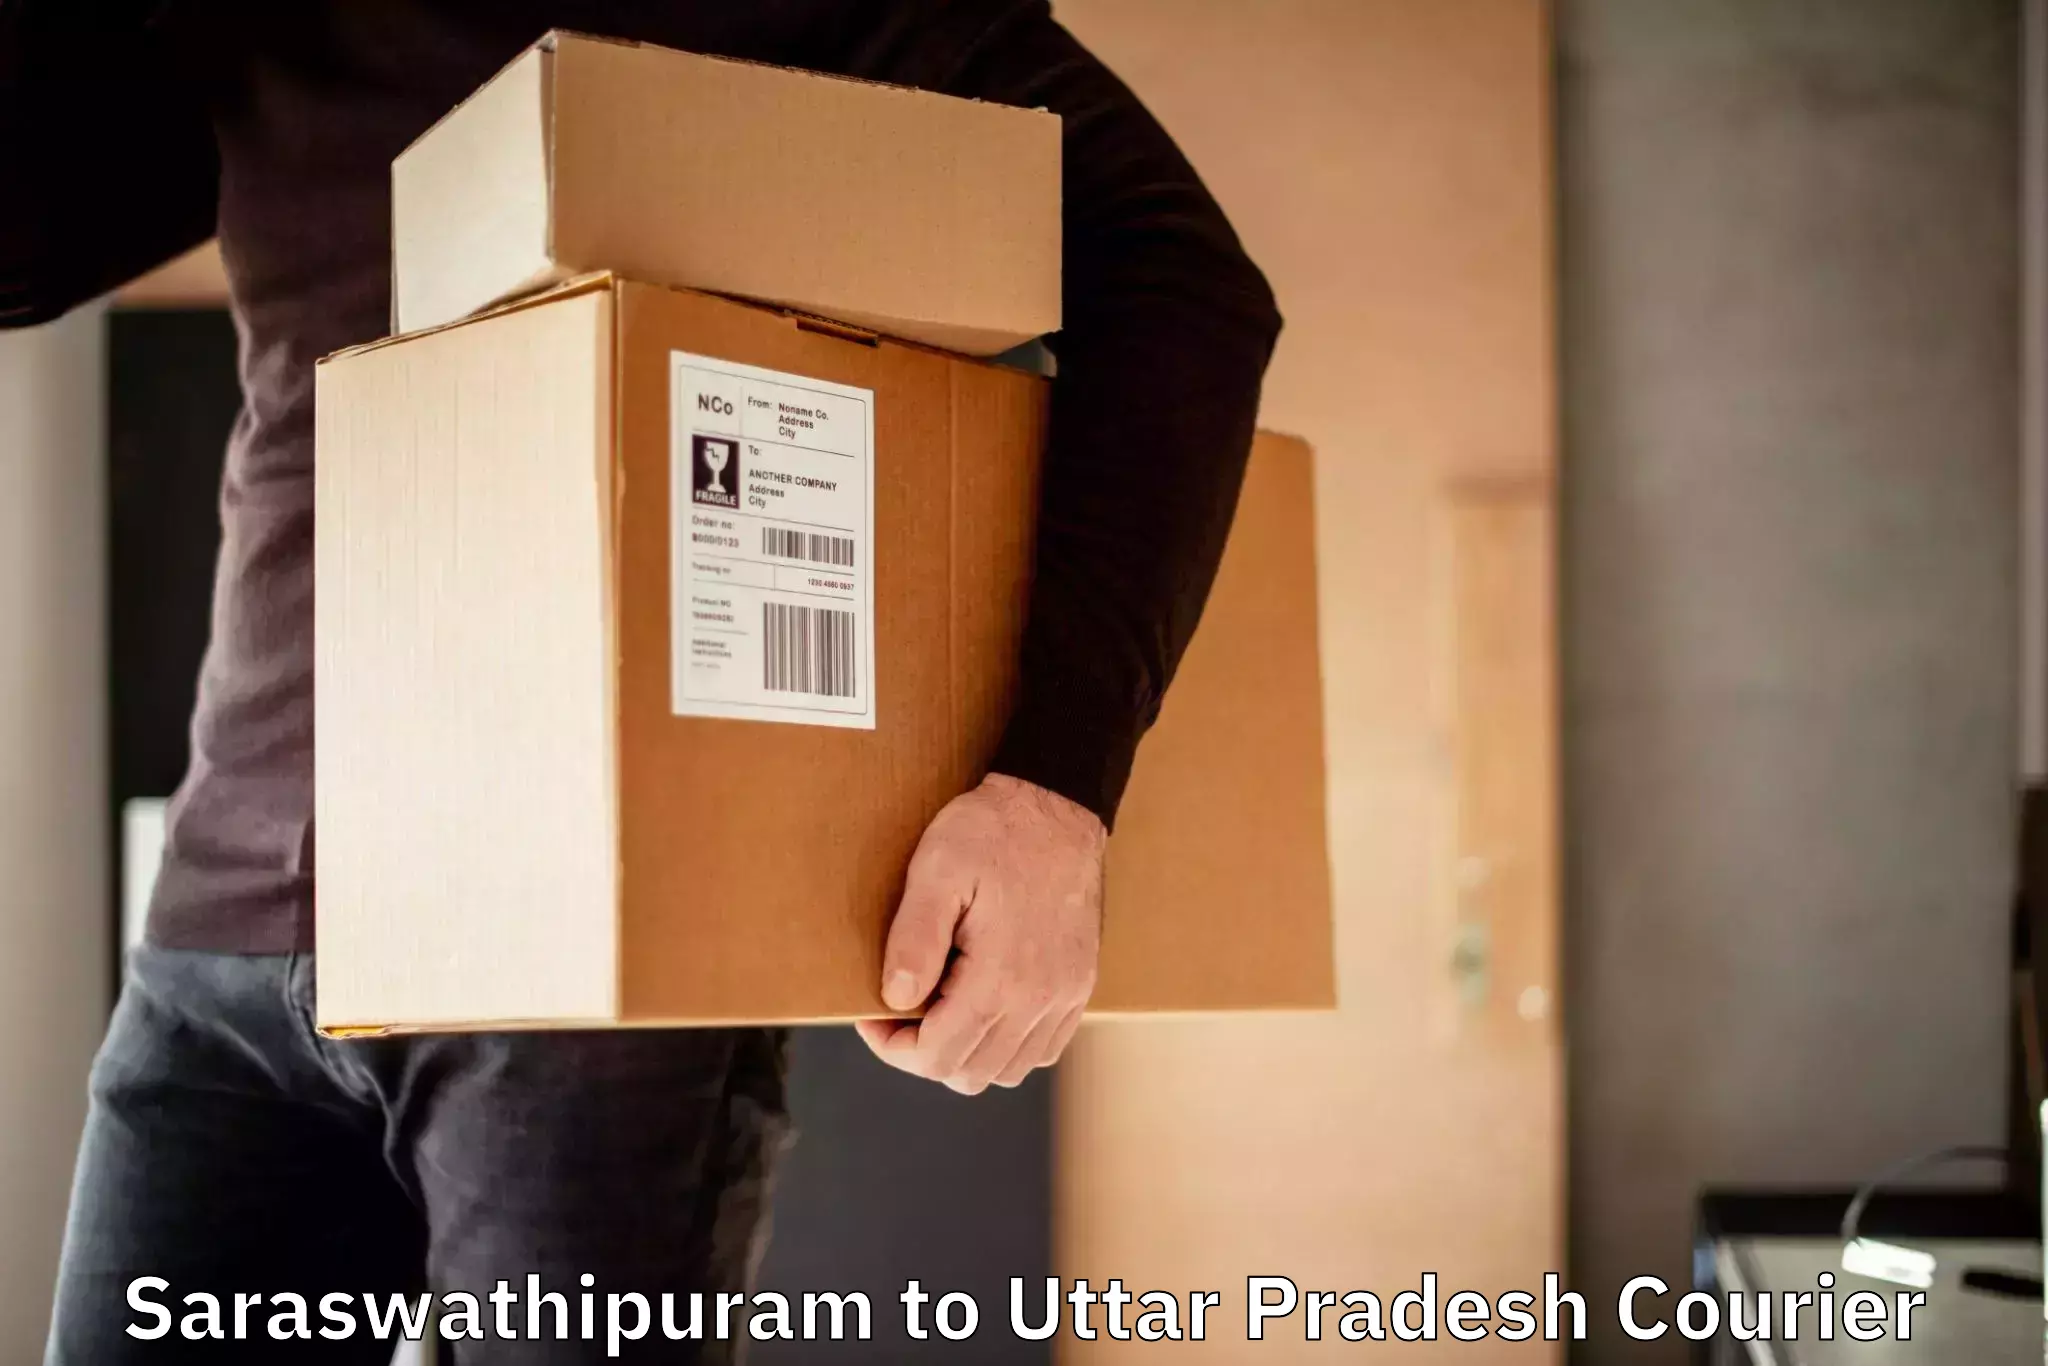 Full-service courier options Saraswathipuram to Kauriram